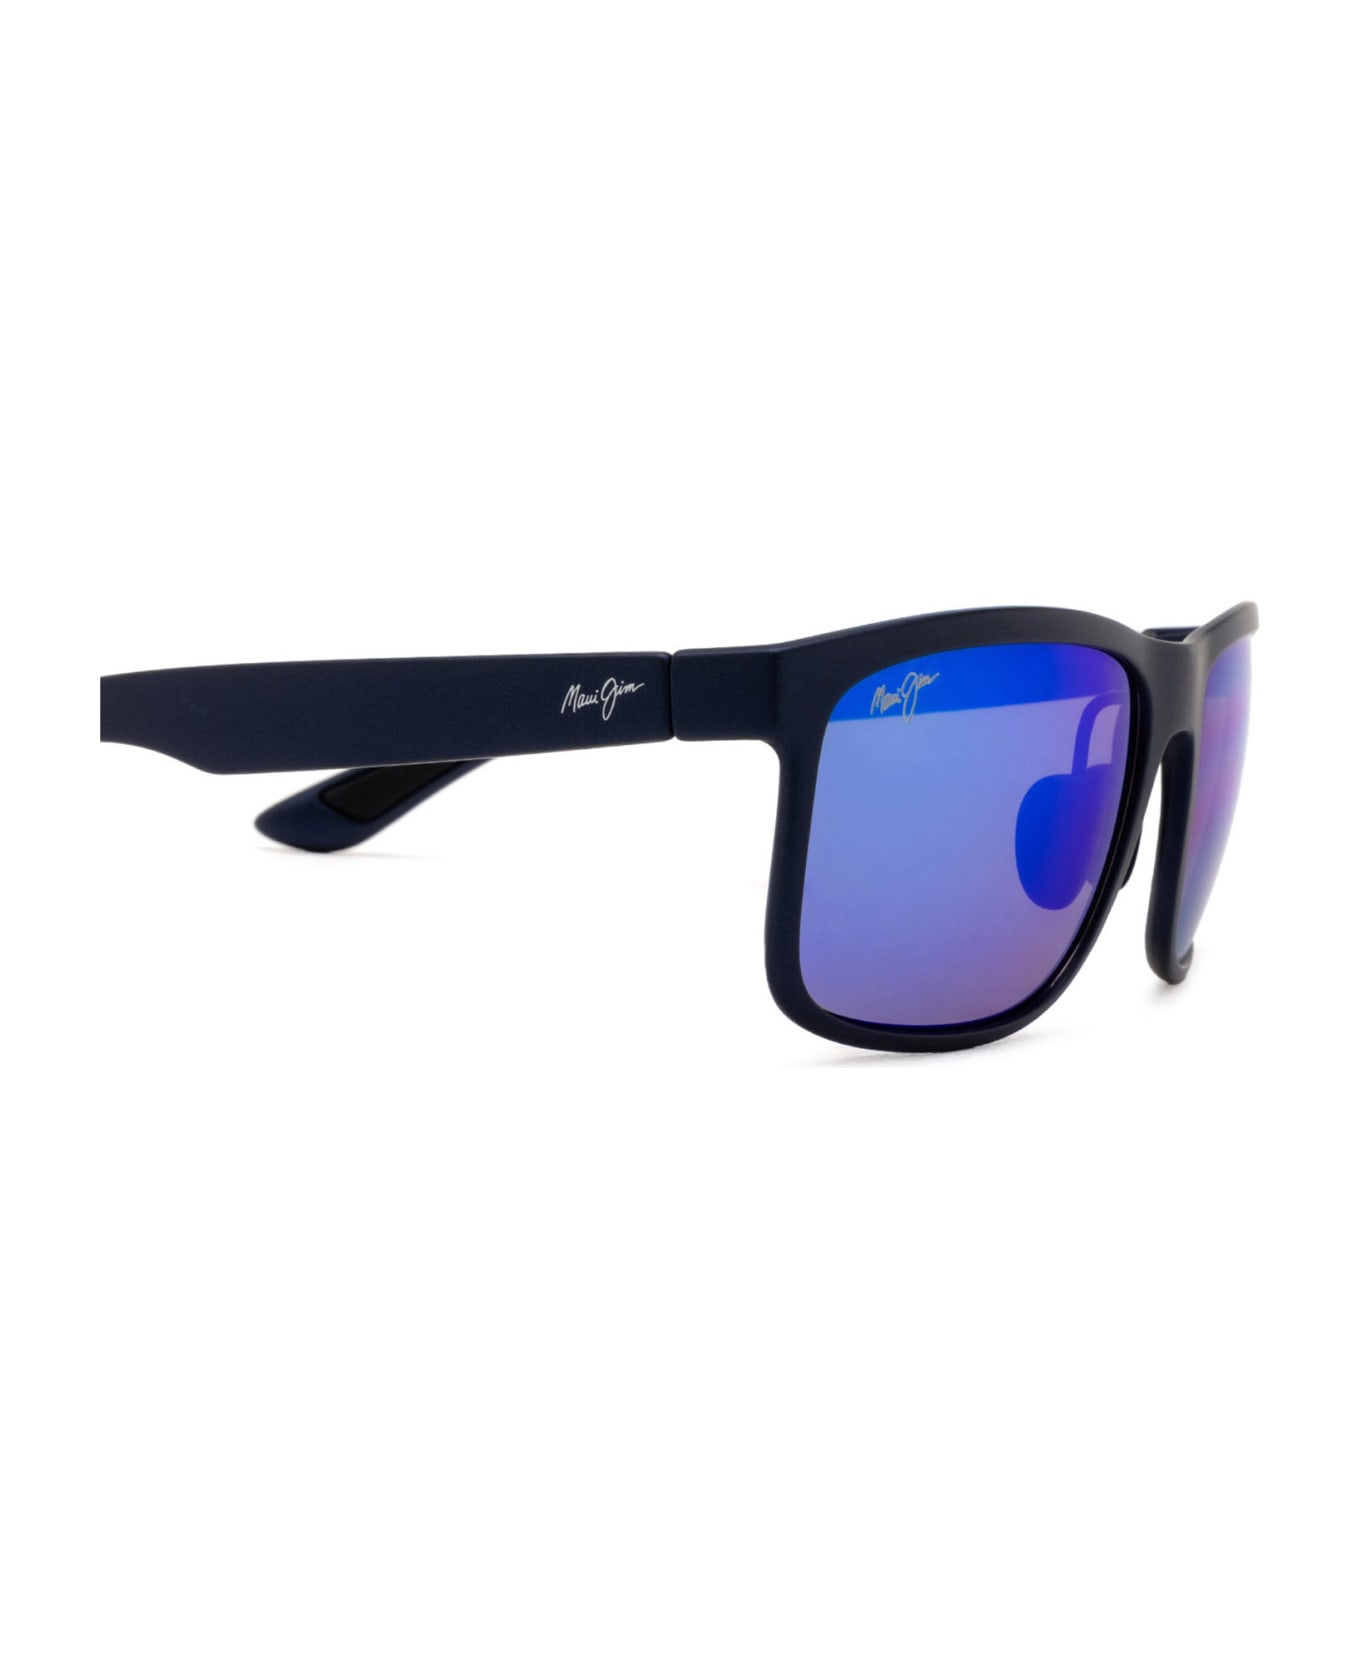 Maui Jim Mj449 Blue Sunglasses - Blue